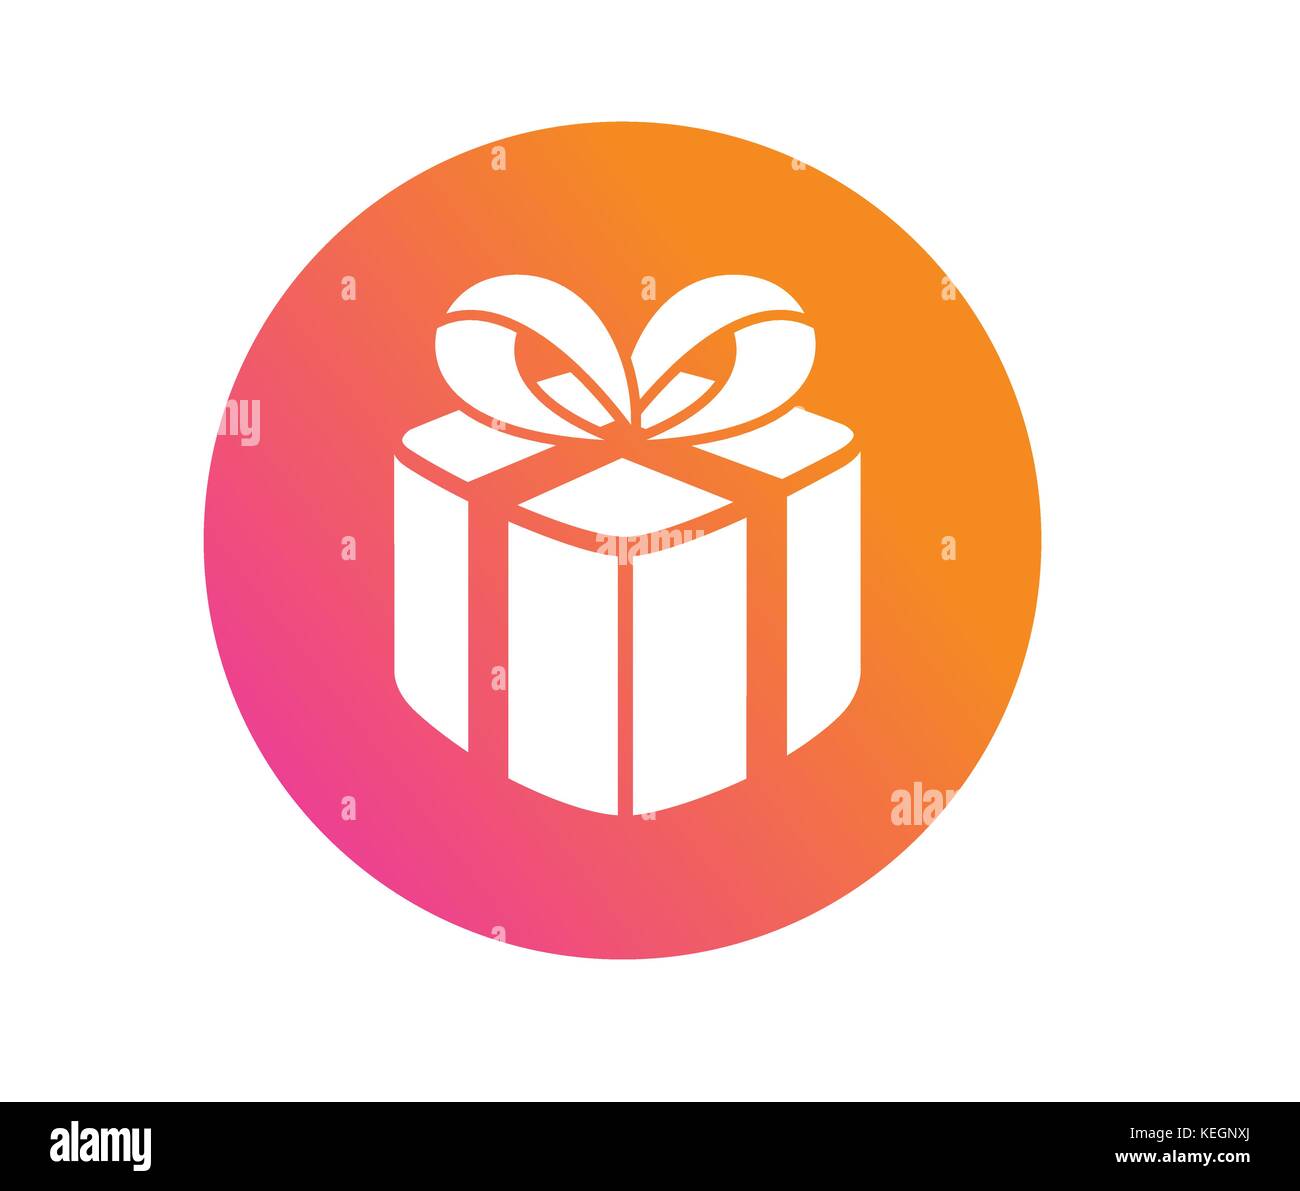 Der Kreis bunten Farbverlauf Weihnachten Geschenk box Symbol Stock Vektor